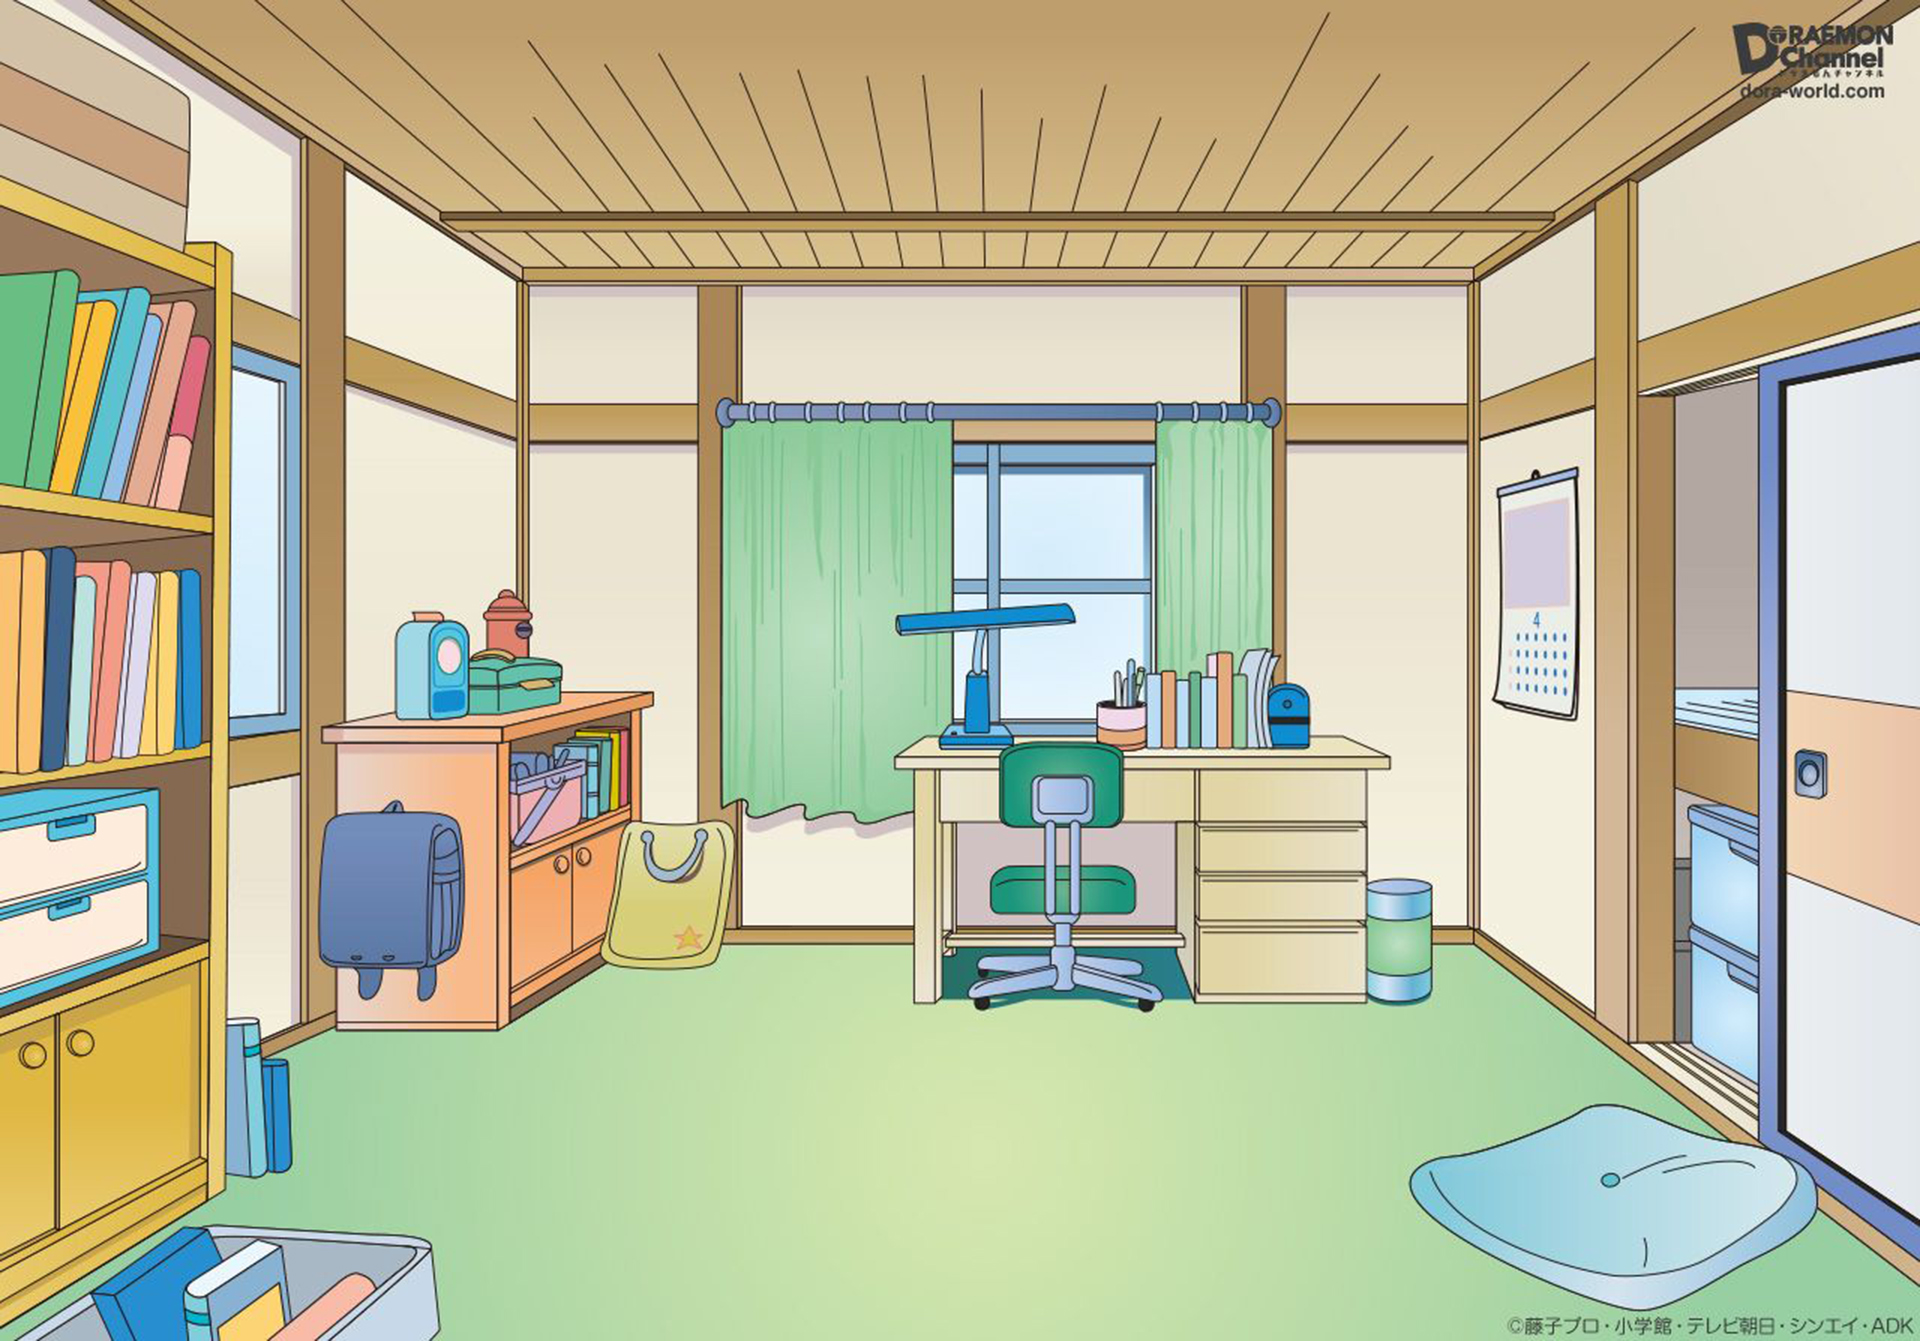 22 Stunning Anime Bedroom Ideas  Displate Blog